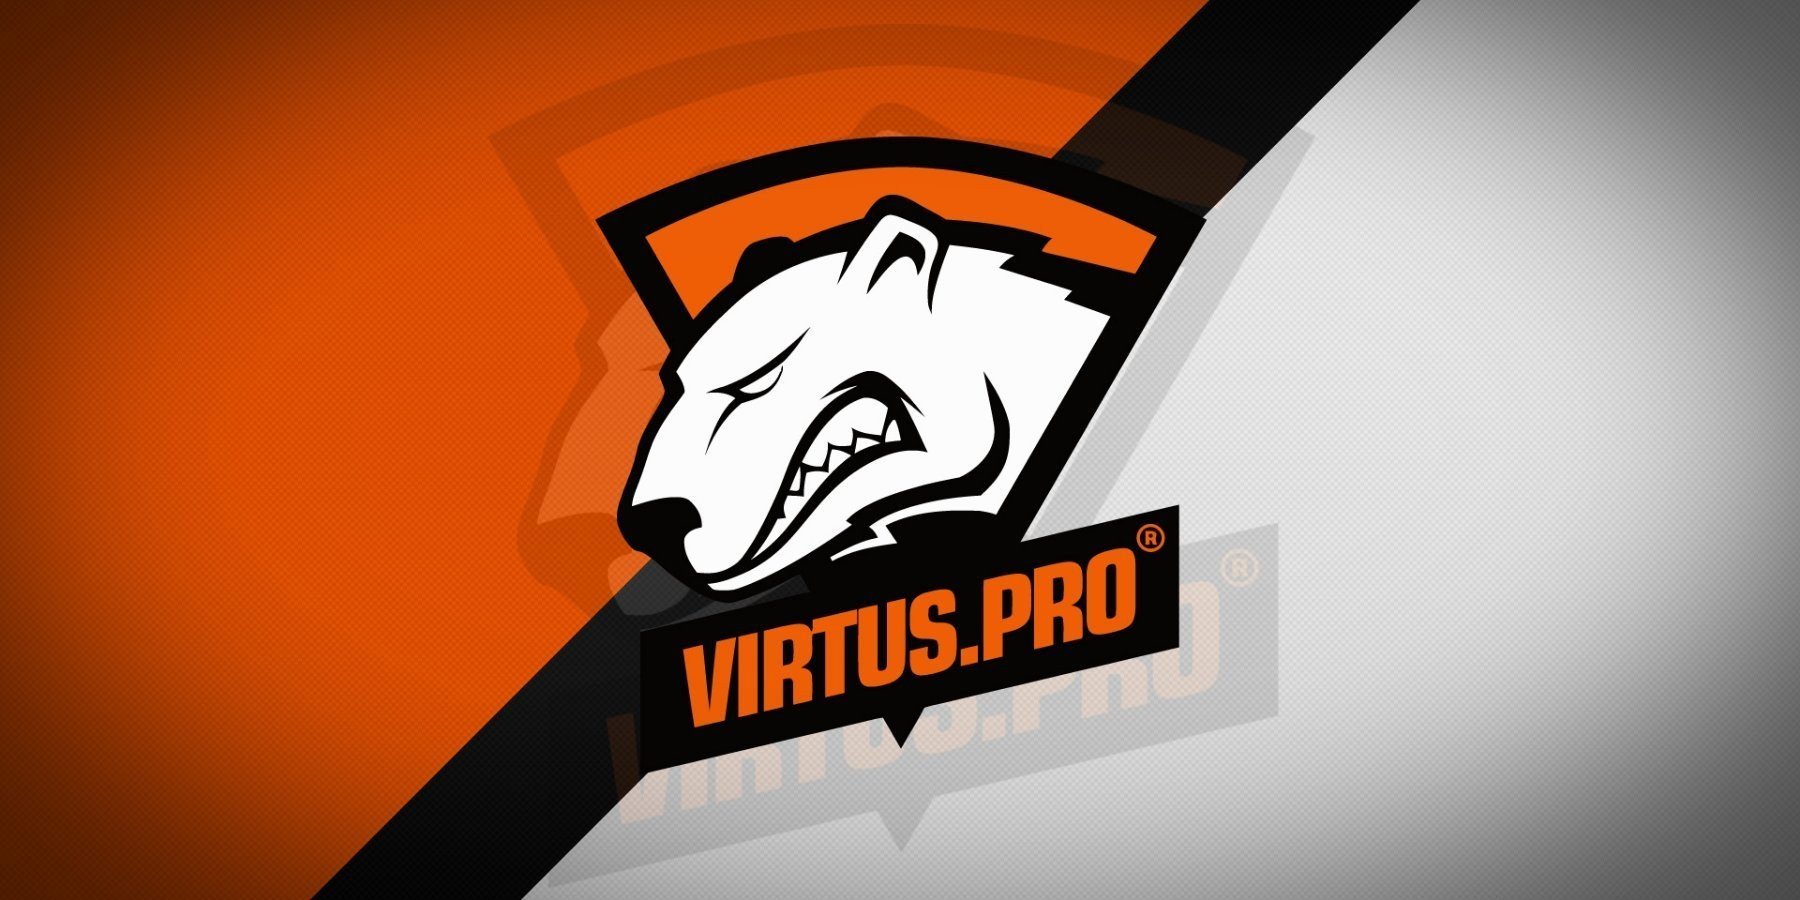 Virtus Pro Dota 2. VP Virtus Pro. Virtus Pro Dota 2 на аву. Virtus Pro Dota 2 лого. Virtus pro cs 2